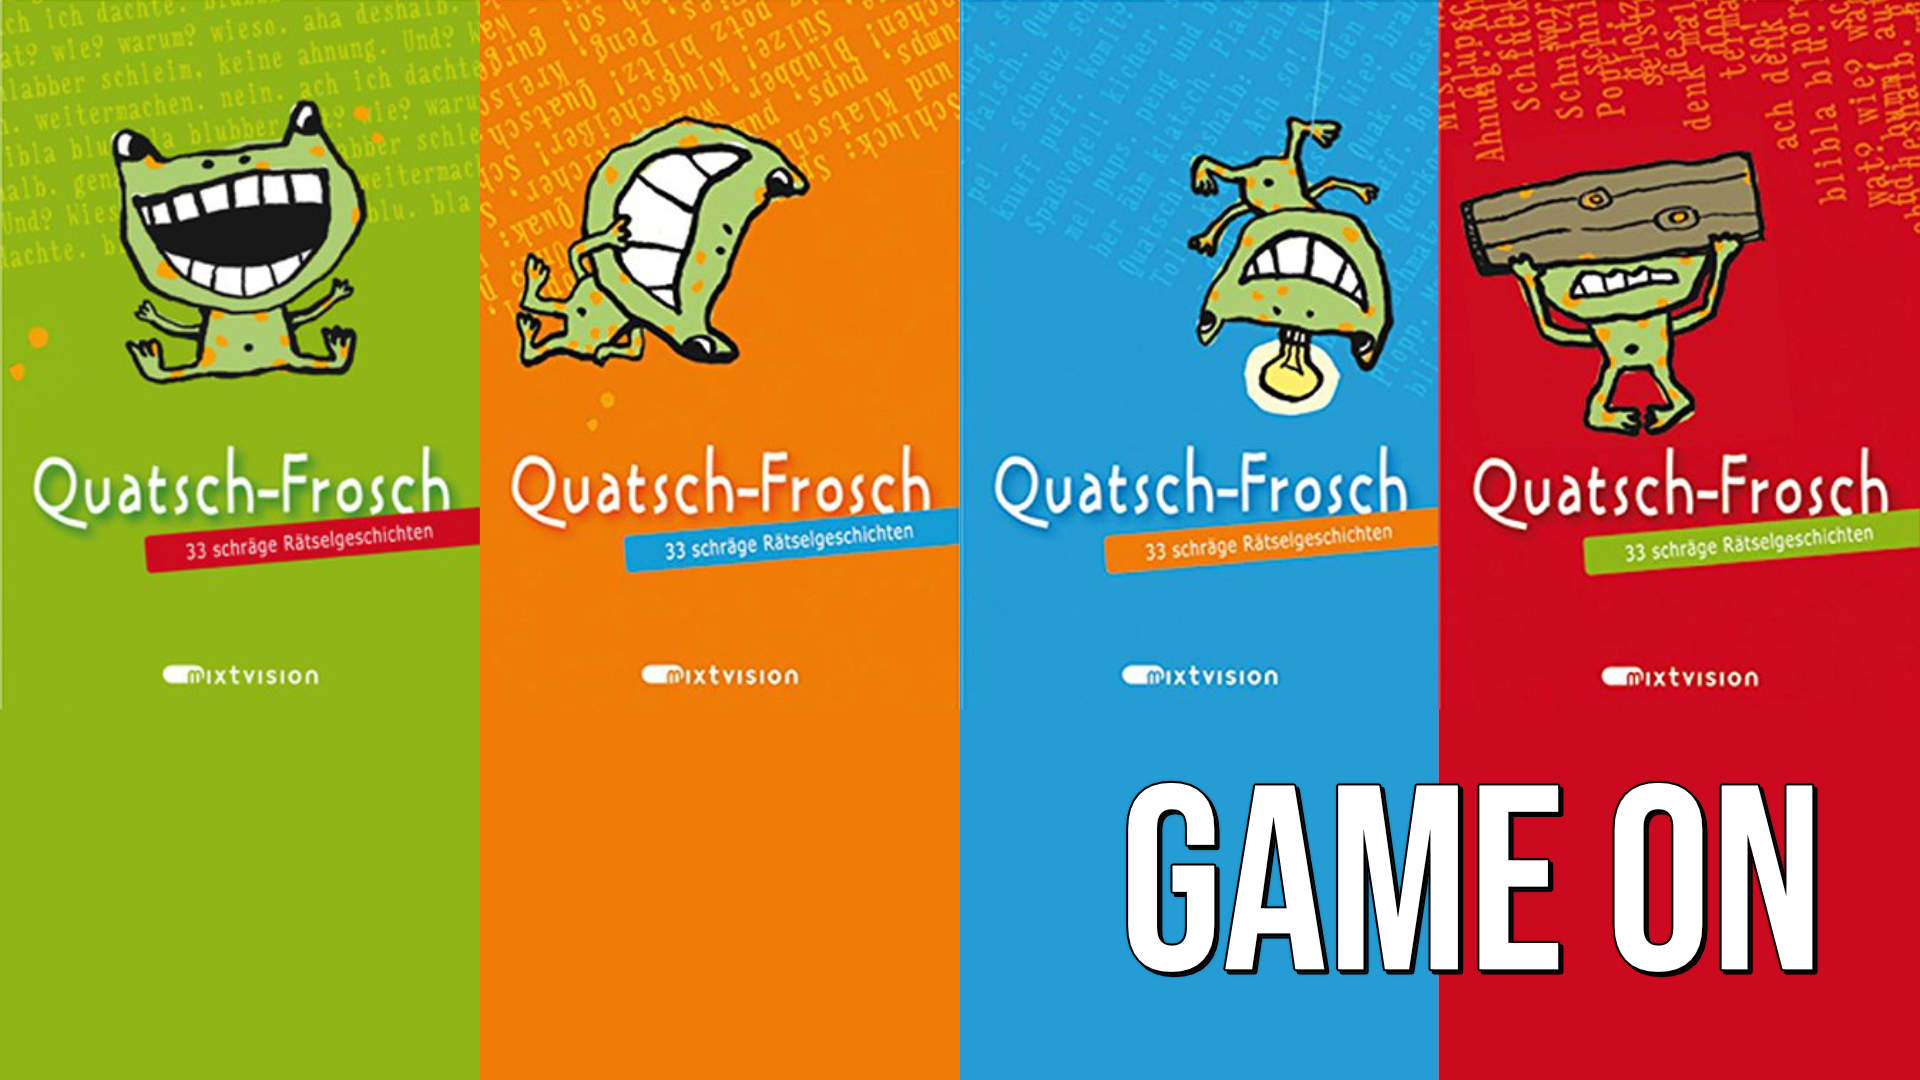 Game on: Quatsch-Frosch